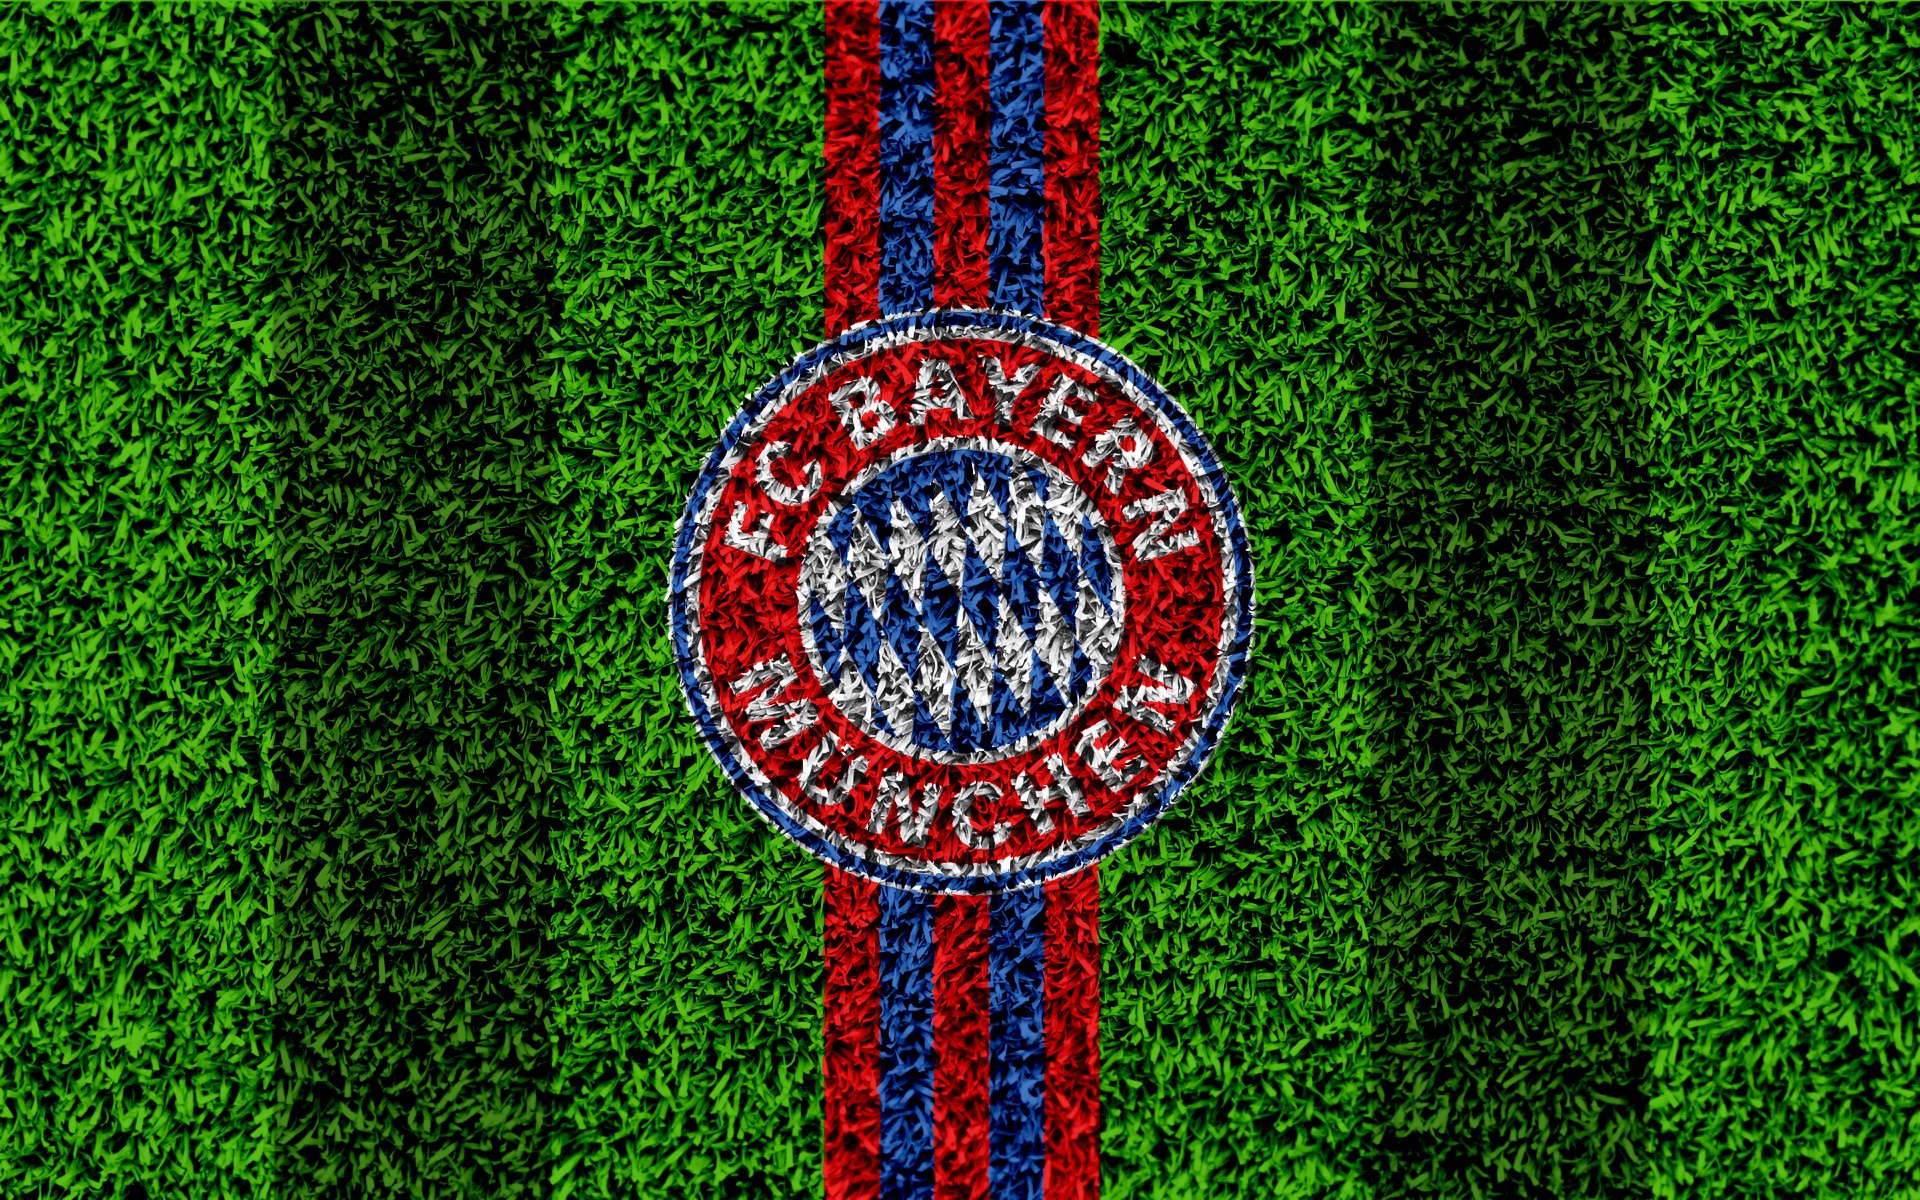 FC Bayern Munich 4k Ultra HD Wallpaper | Background Image ...